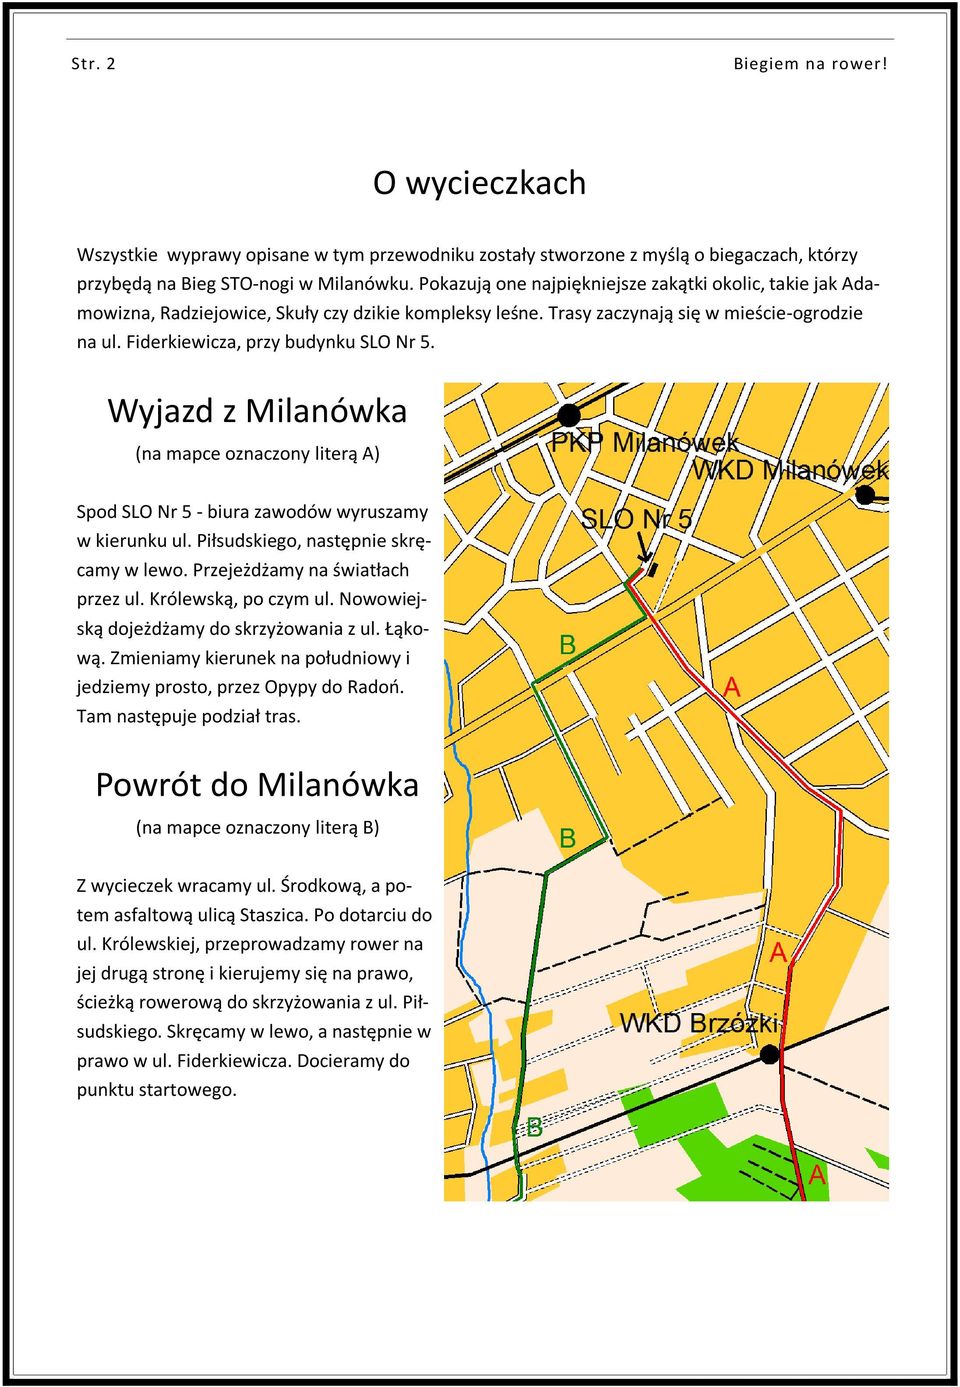 Wyjazd z Milanówka (na mapce oznaczony literą A) Spod SLO Nr 5 - biura zawodów wyruszamy w kierunku ul. Piłsudskiego, następnie skręcamy w lewo. Przejeżdżamy na światłach przez ul.